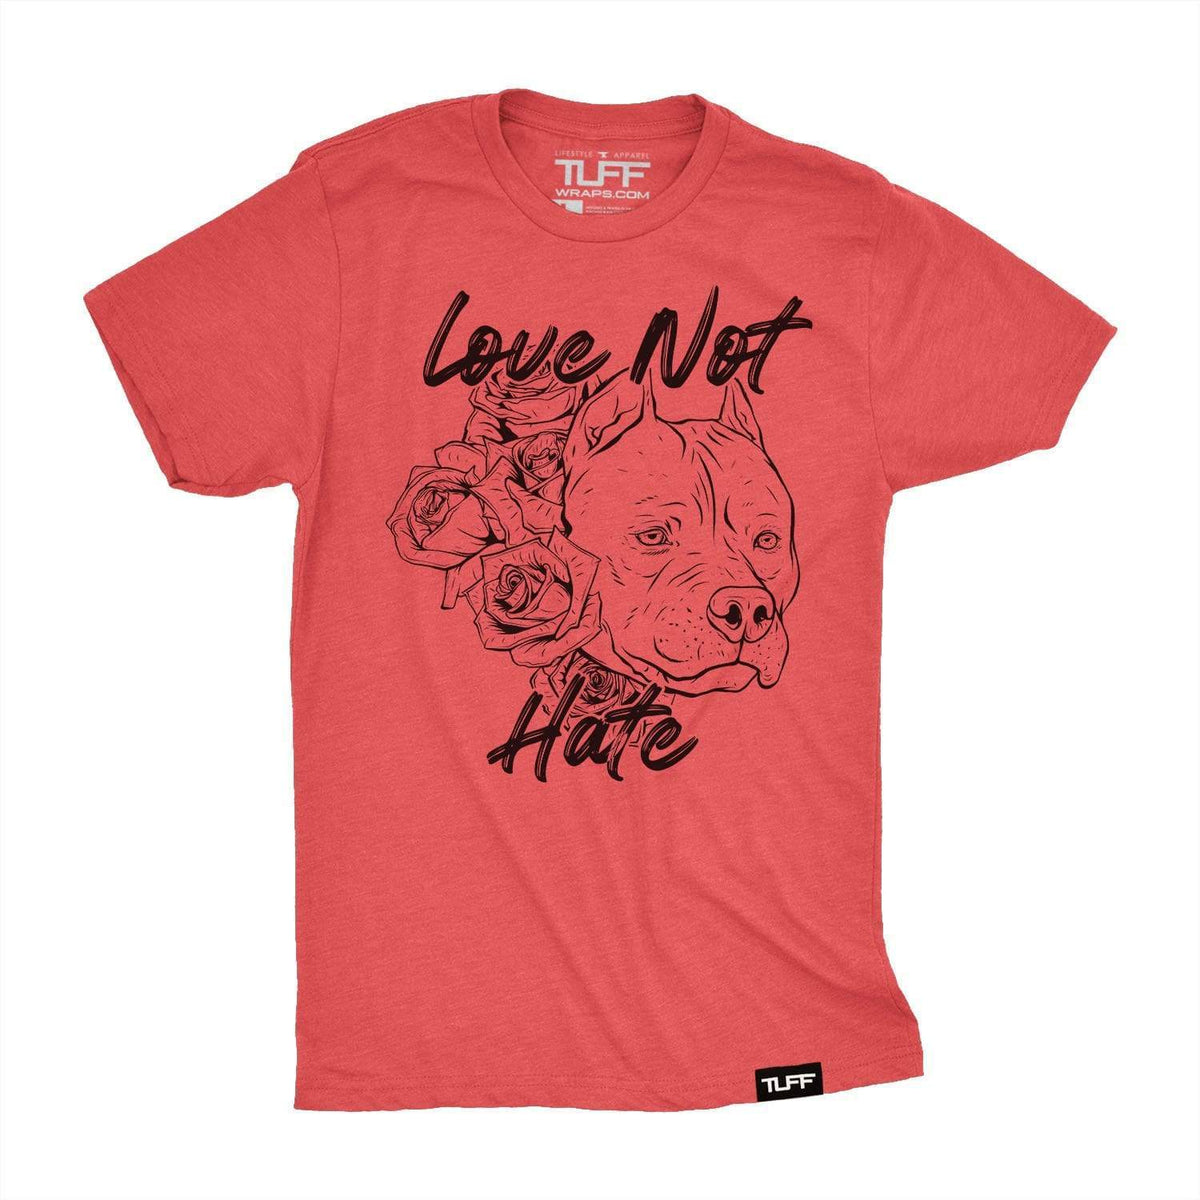 Love Not Hate Tee S / Vintage Red TuffWraps.com